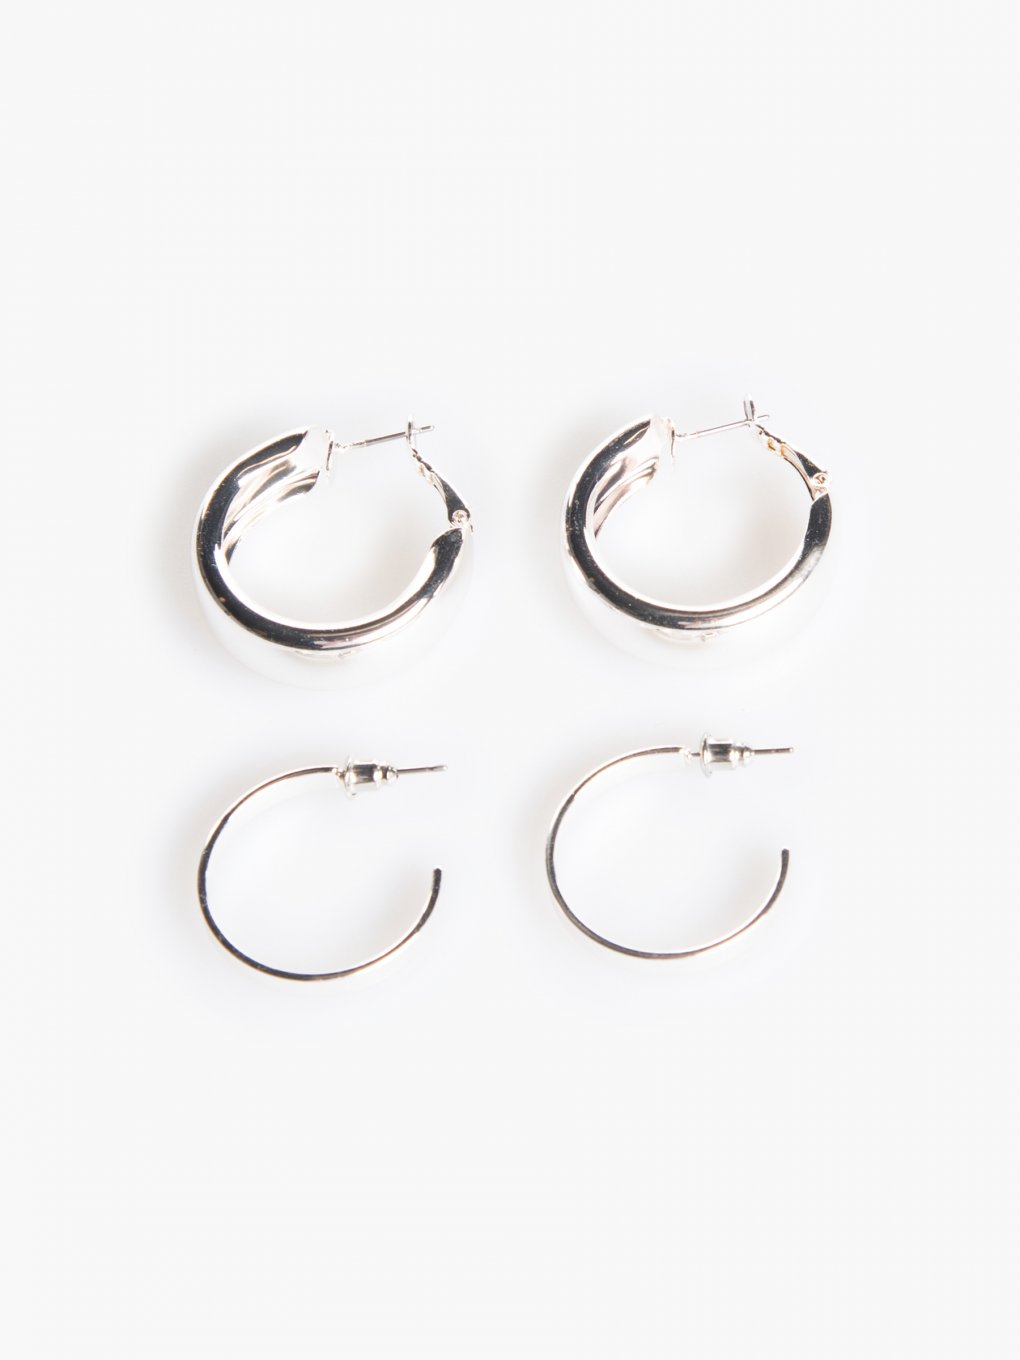 2 pairs of hoop earrings